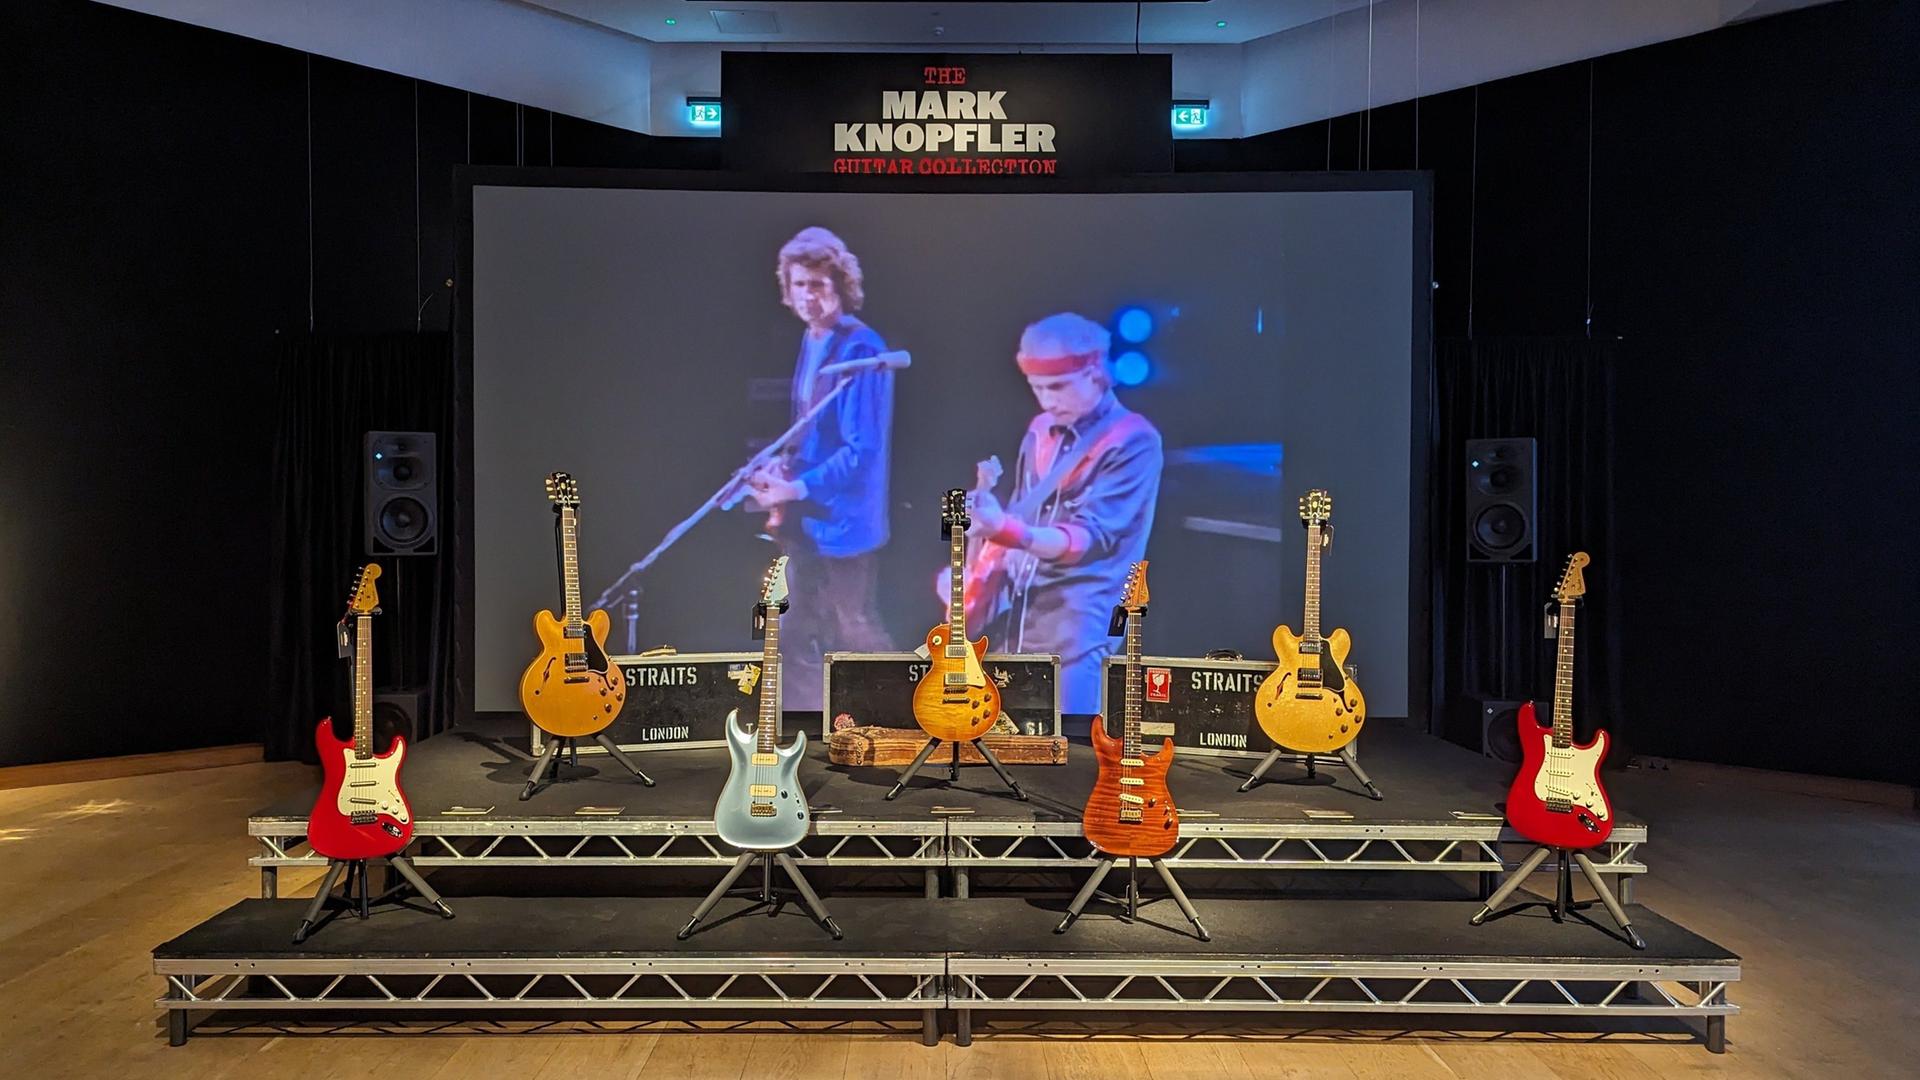 Mark Knopflers Gitarren werden im Auktionshaus Christie's auf einer Bühne ausgestellt, dahinter ein Bild mit Musiker bei einem Konzert